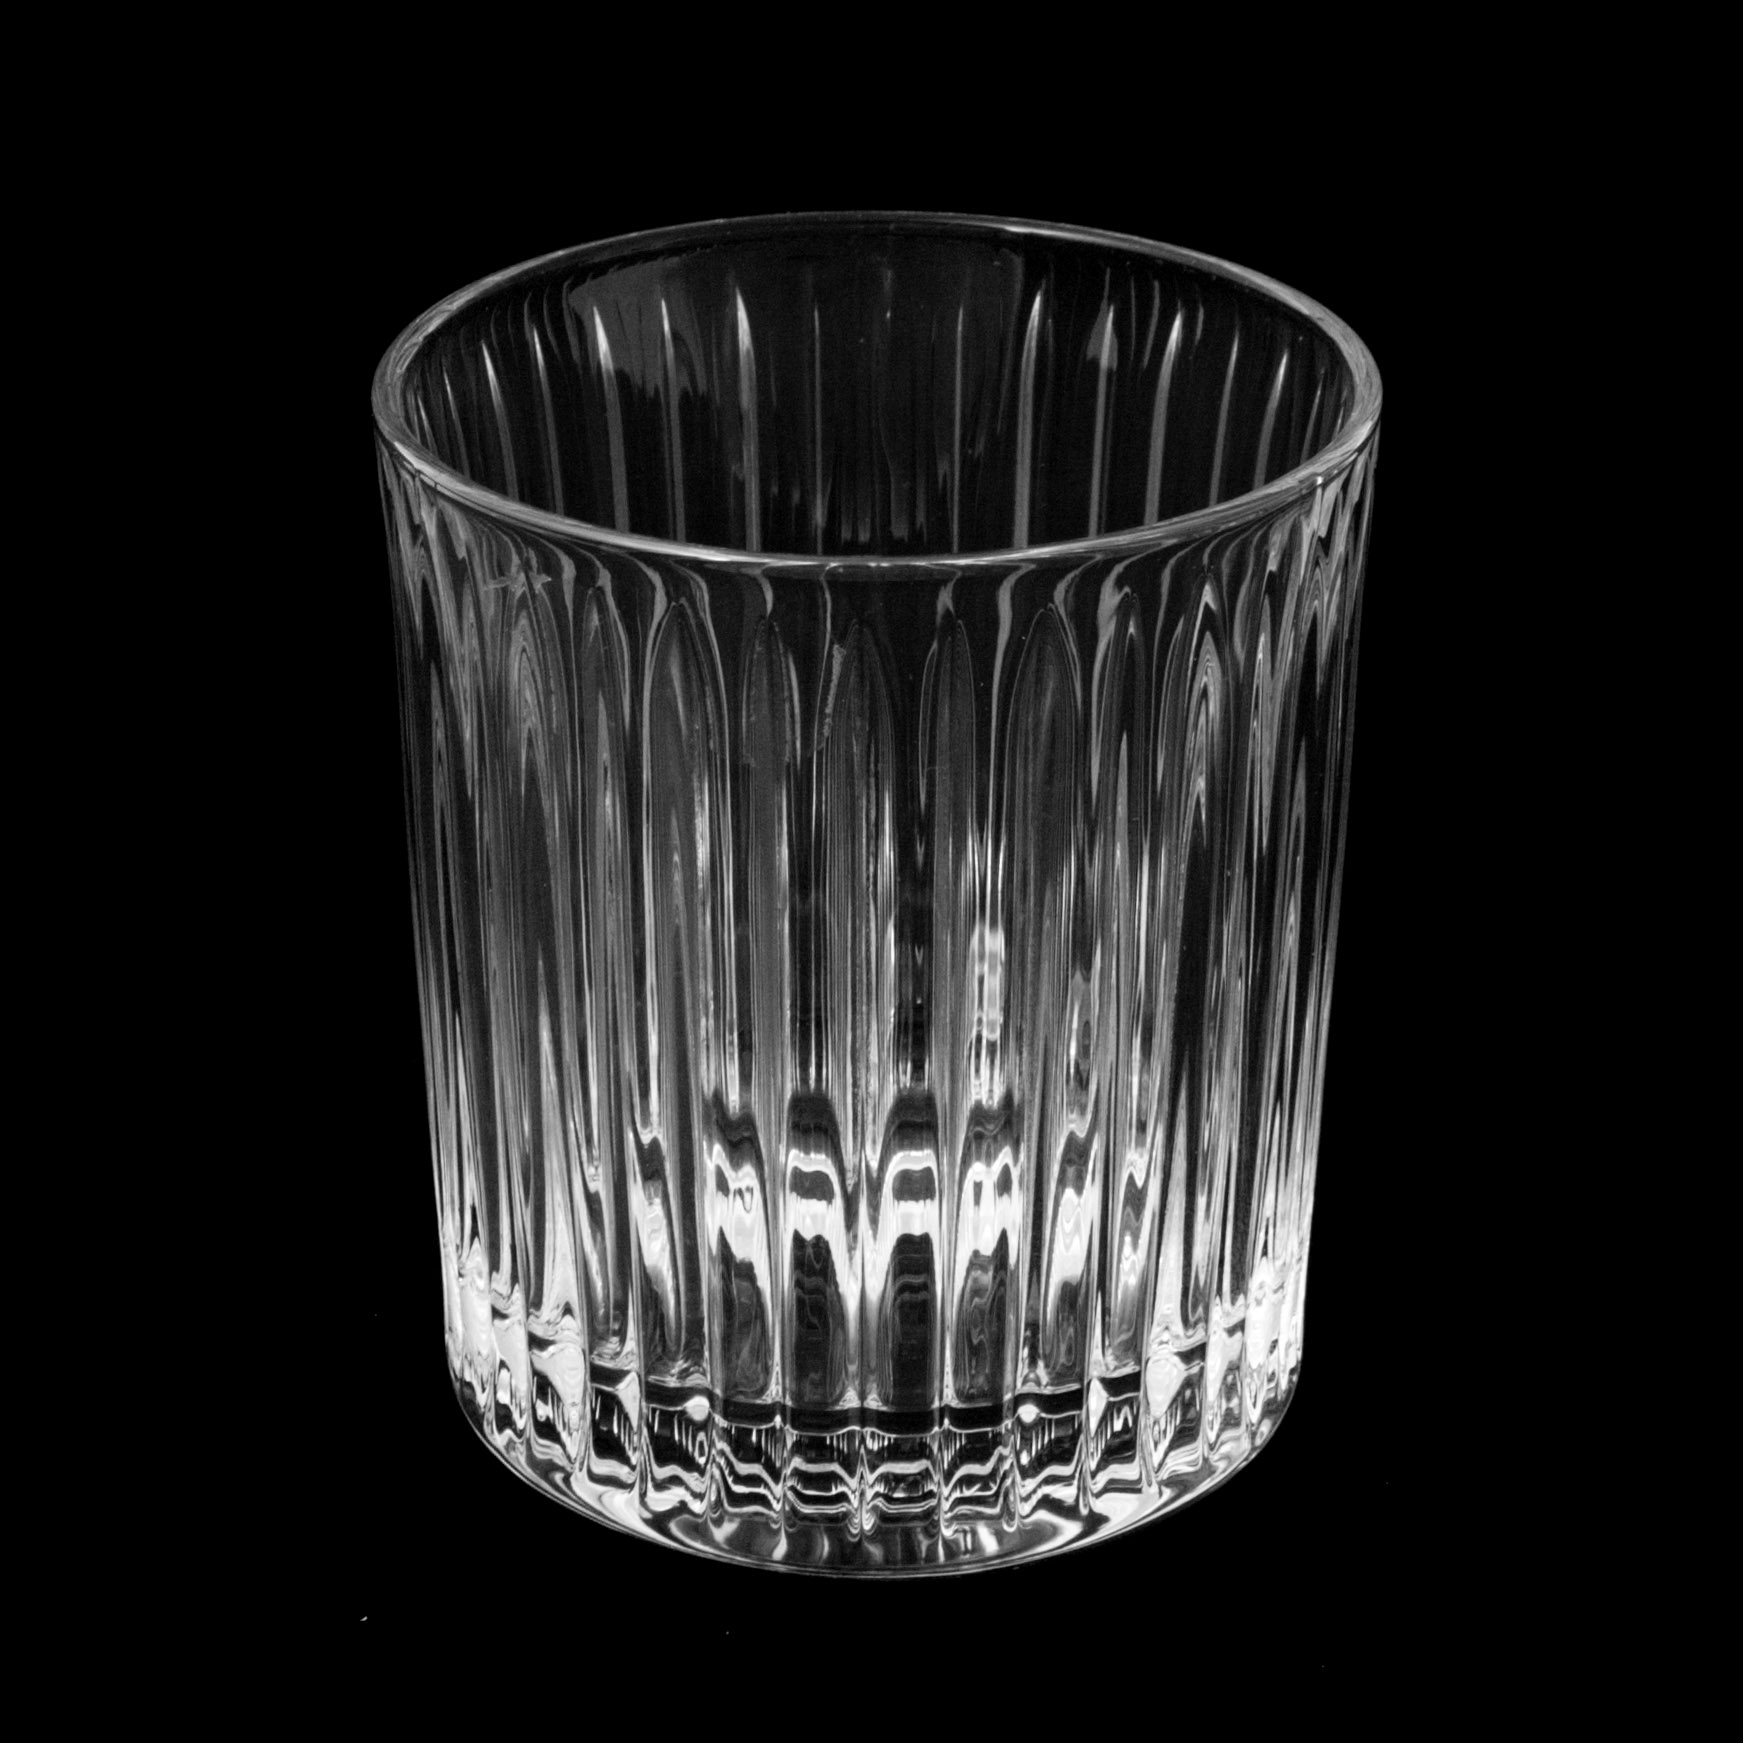 Набор стаканов для виски skyline 320мл 6шт Crystal bohemia a.s. набор стаканов для виски crystal bohemia аngela 320мл 6шт 990 24600 0 42000 320 609